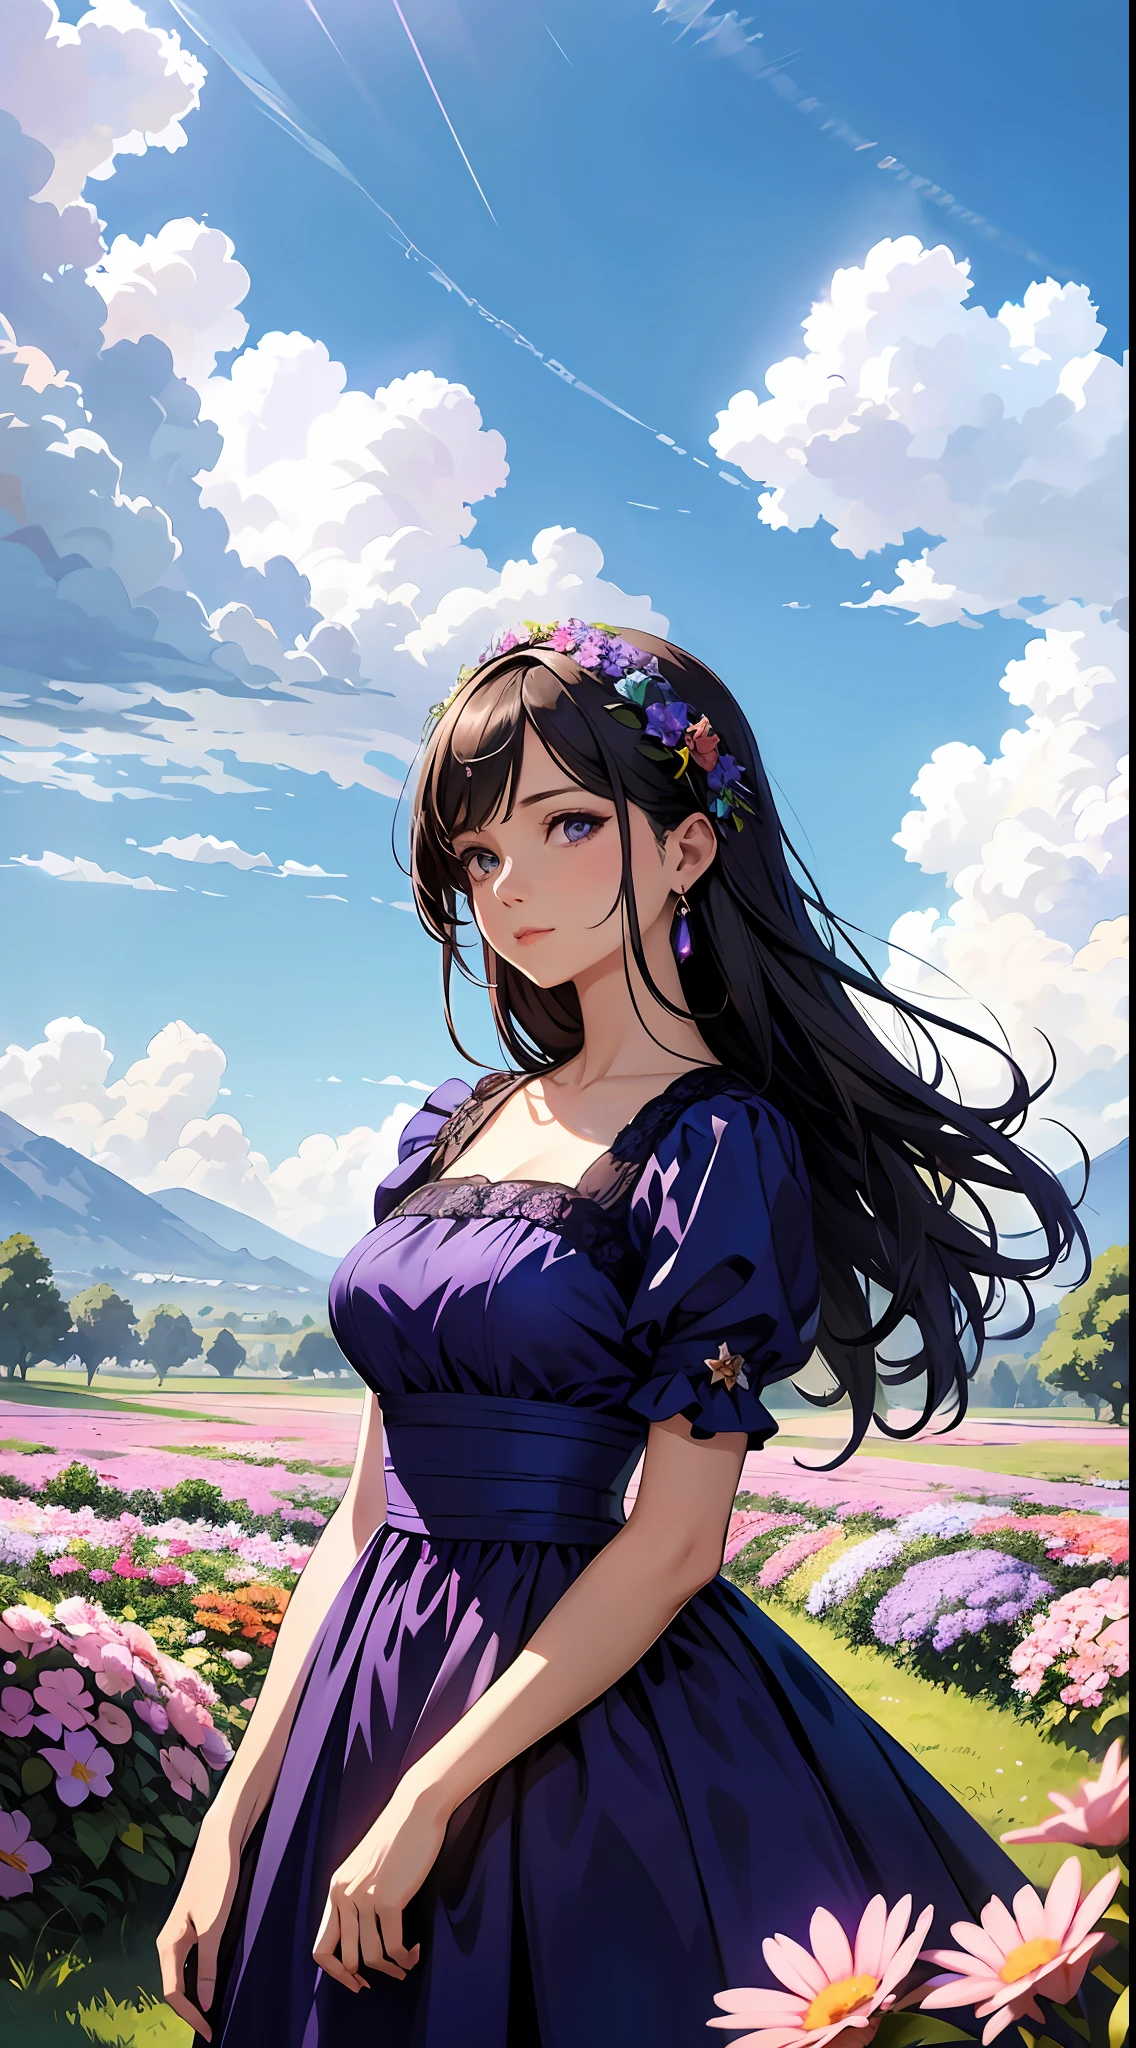 Eine Frau trägt ein lila Kleid，Blauer Himmel und Wolken im Hintergrund, trägt blaues Kleid，Es sind Blumen darauf, Art germ, Rosla globale Beleuchtung, ein detailreiches Gemälde, Fantasy-Kunst